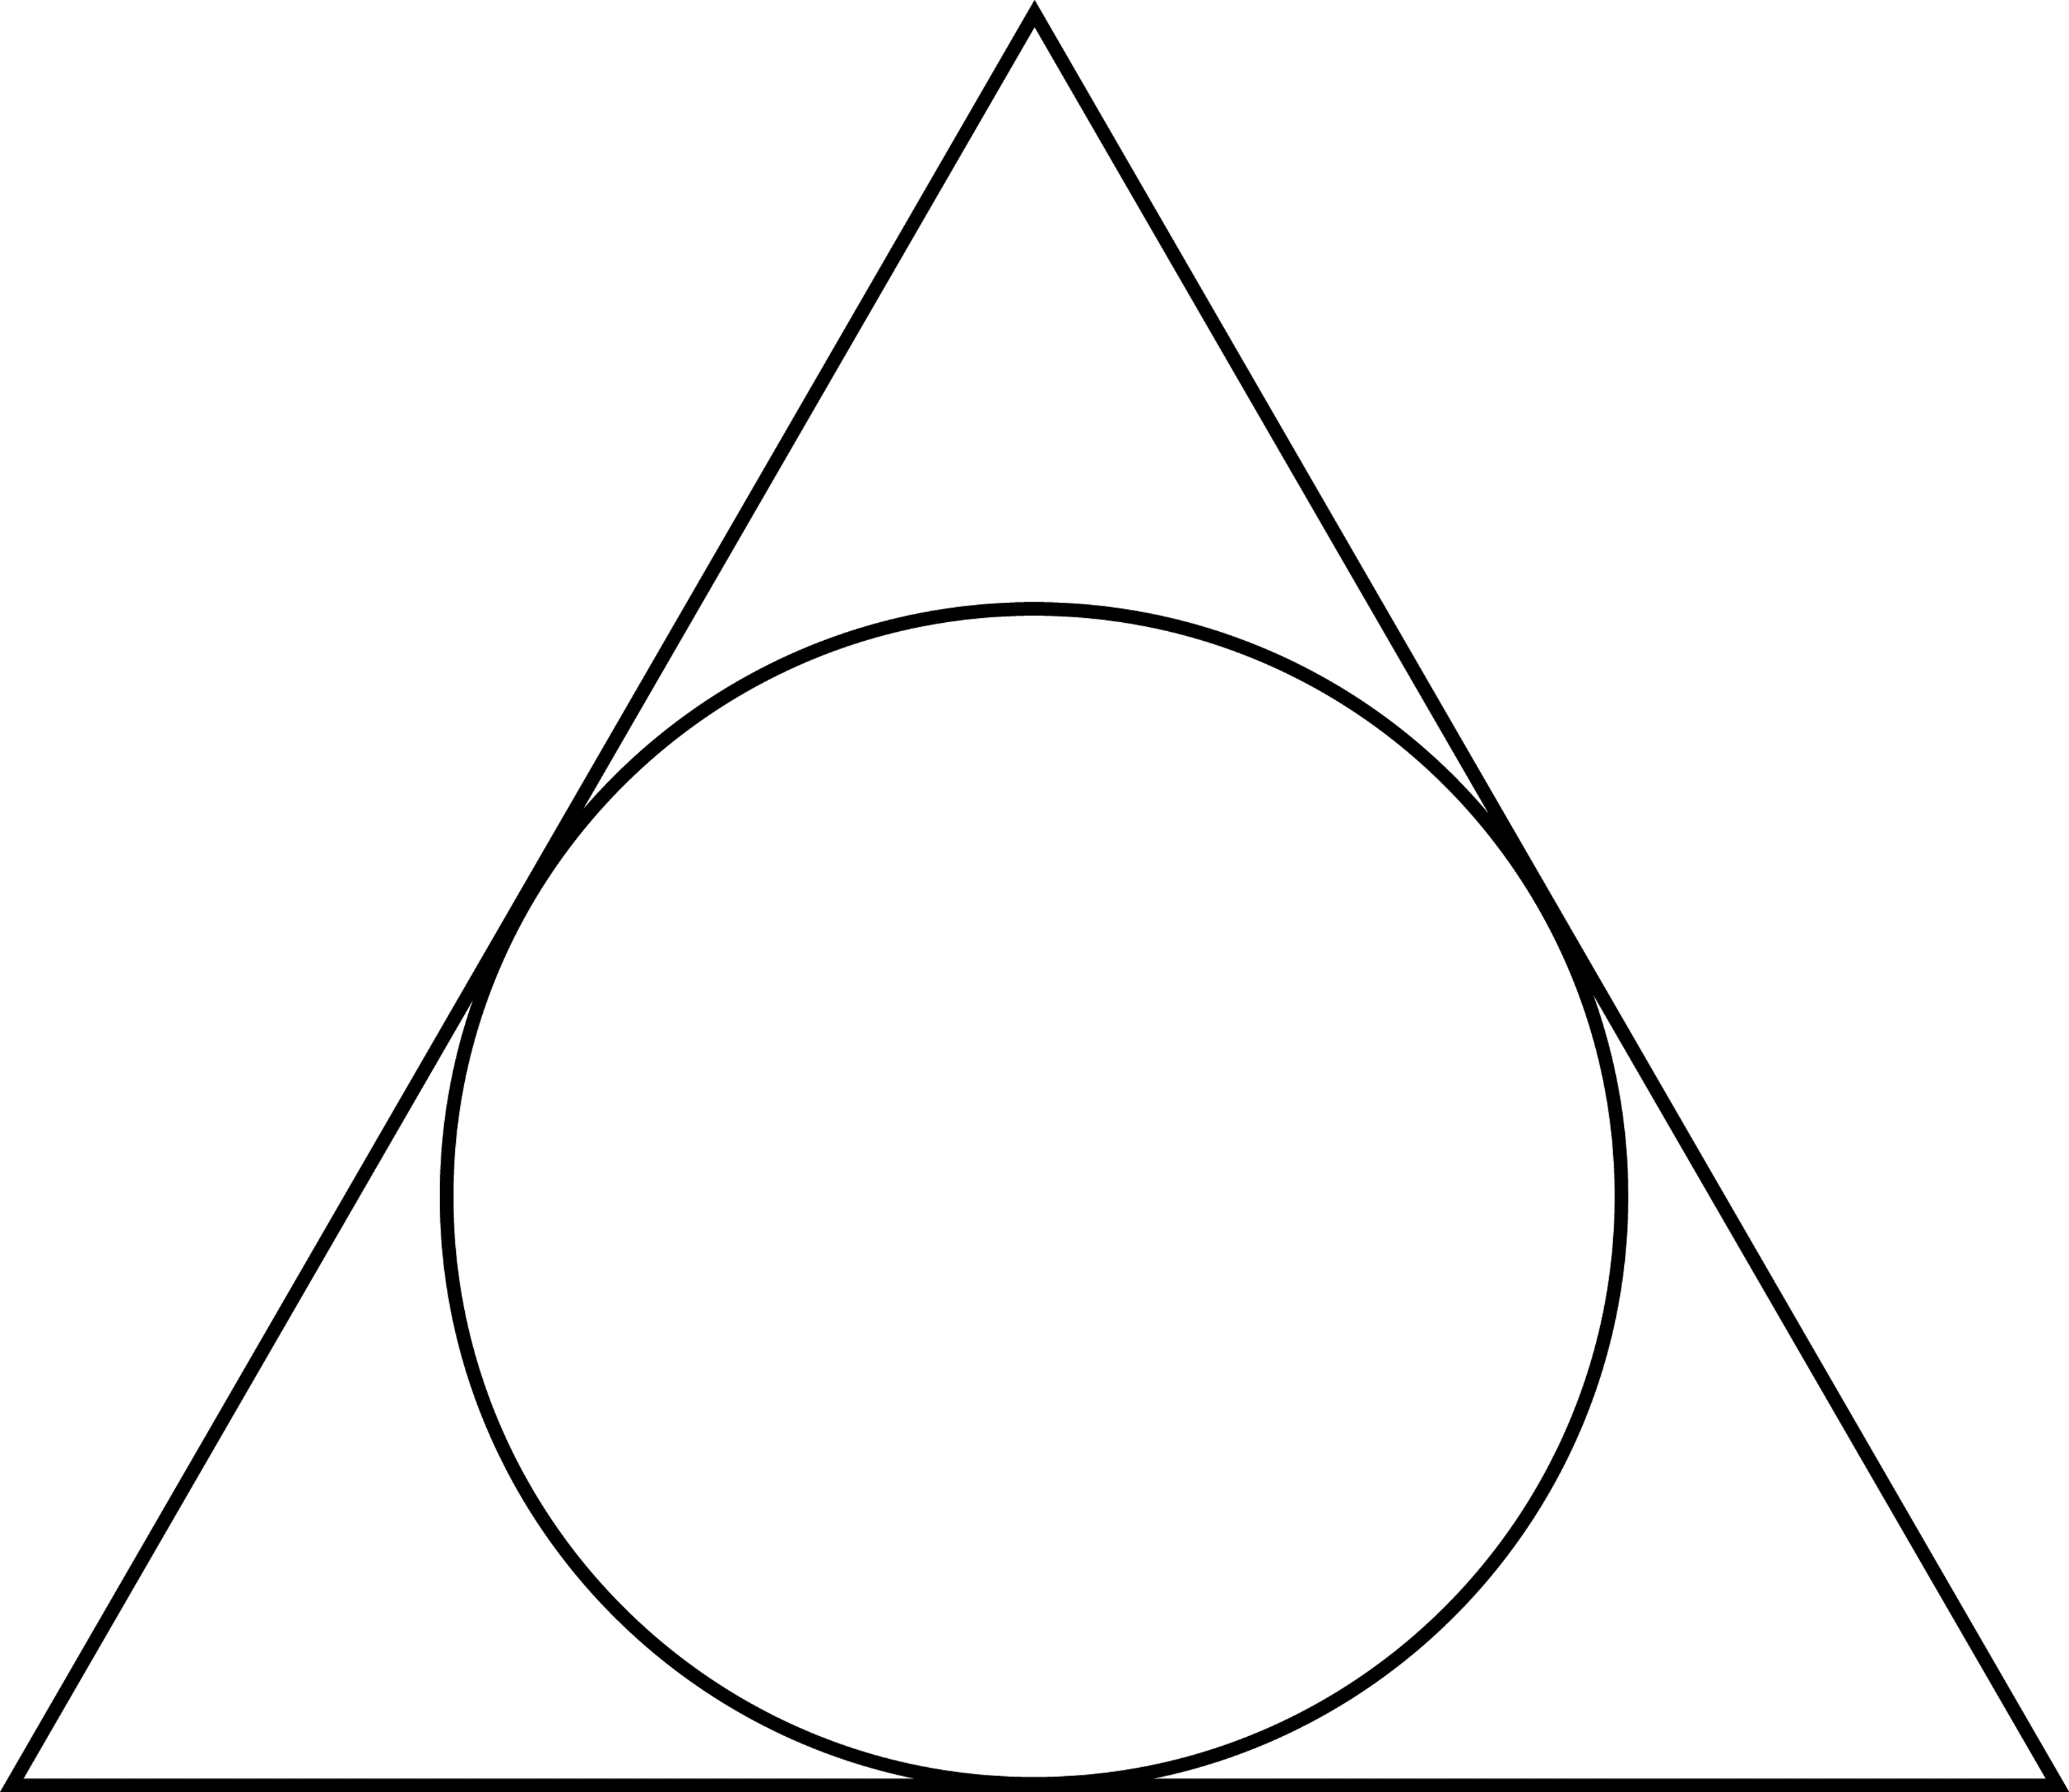 Круг правильная форма. Треугольник в круге. Треугольник с кругом внутри. Равносторонний треугольник в круге. Вписанные фигуры.